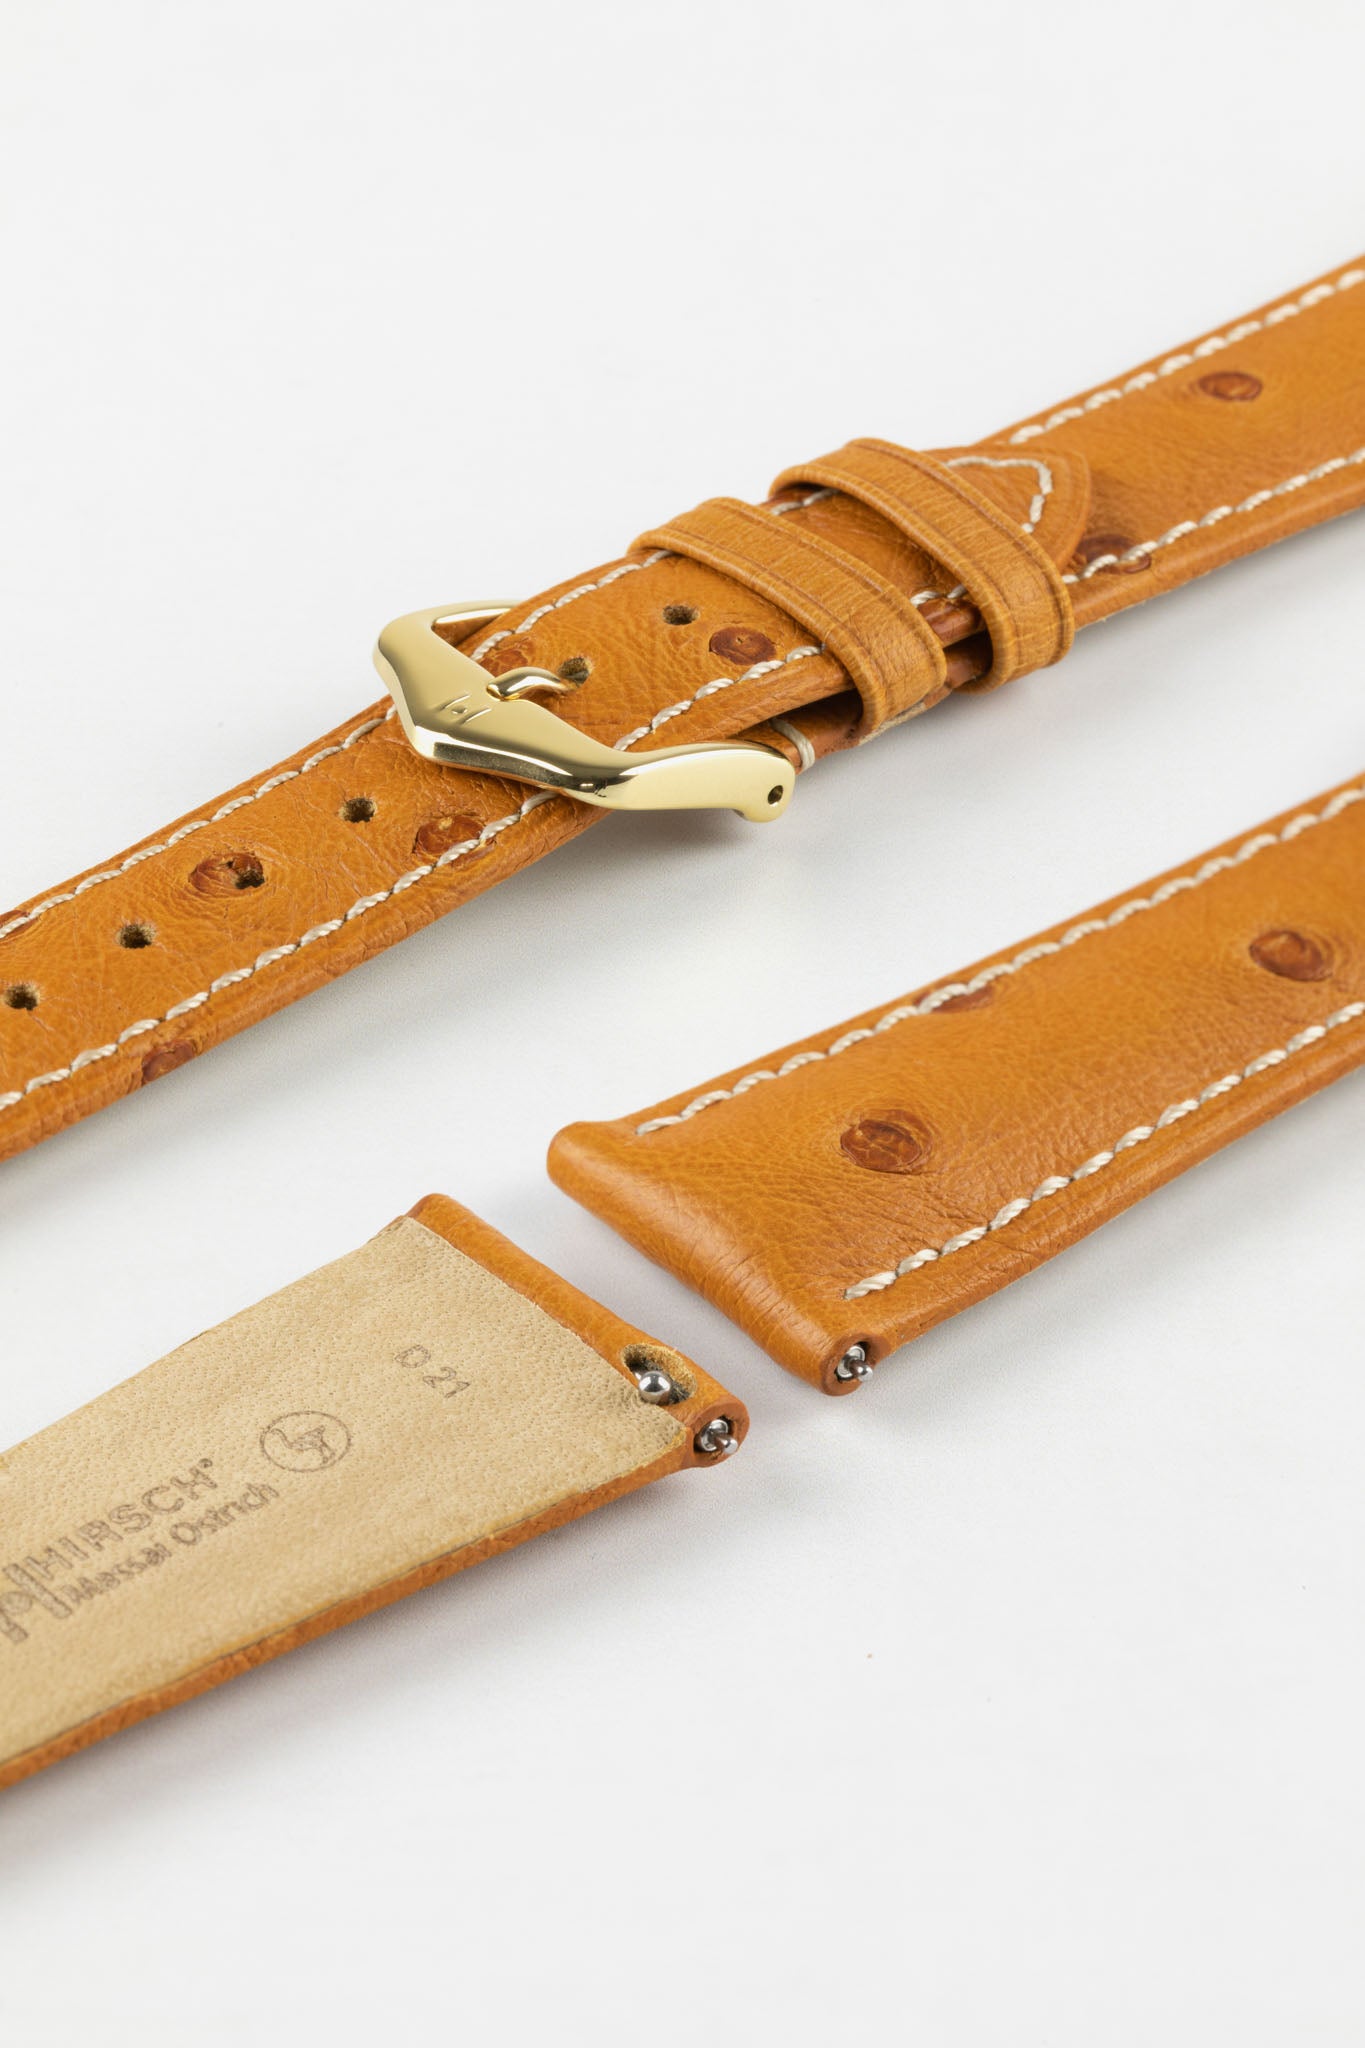 Hirsch MASSAI OSTRICH Leather Watch Strap in HONEY With WHITE Stitching